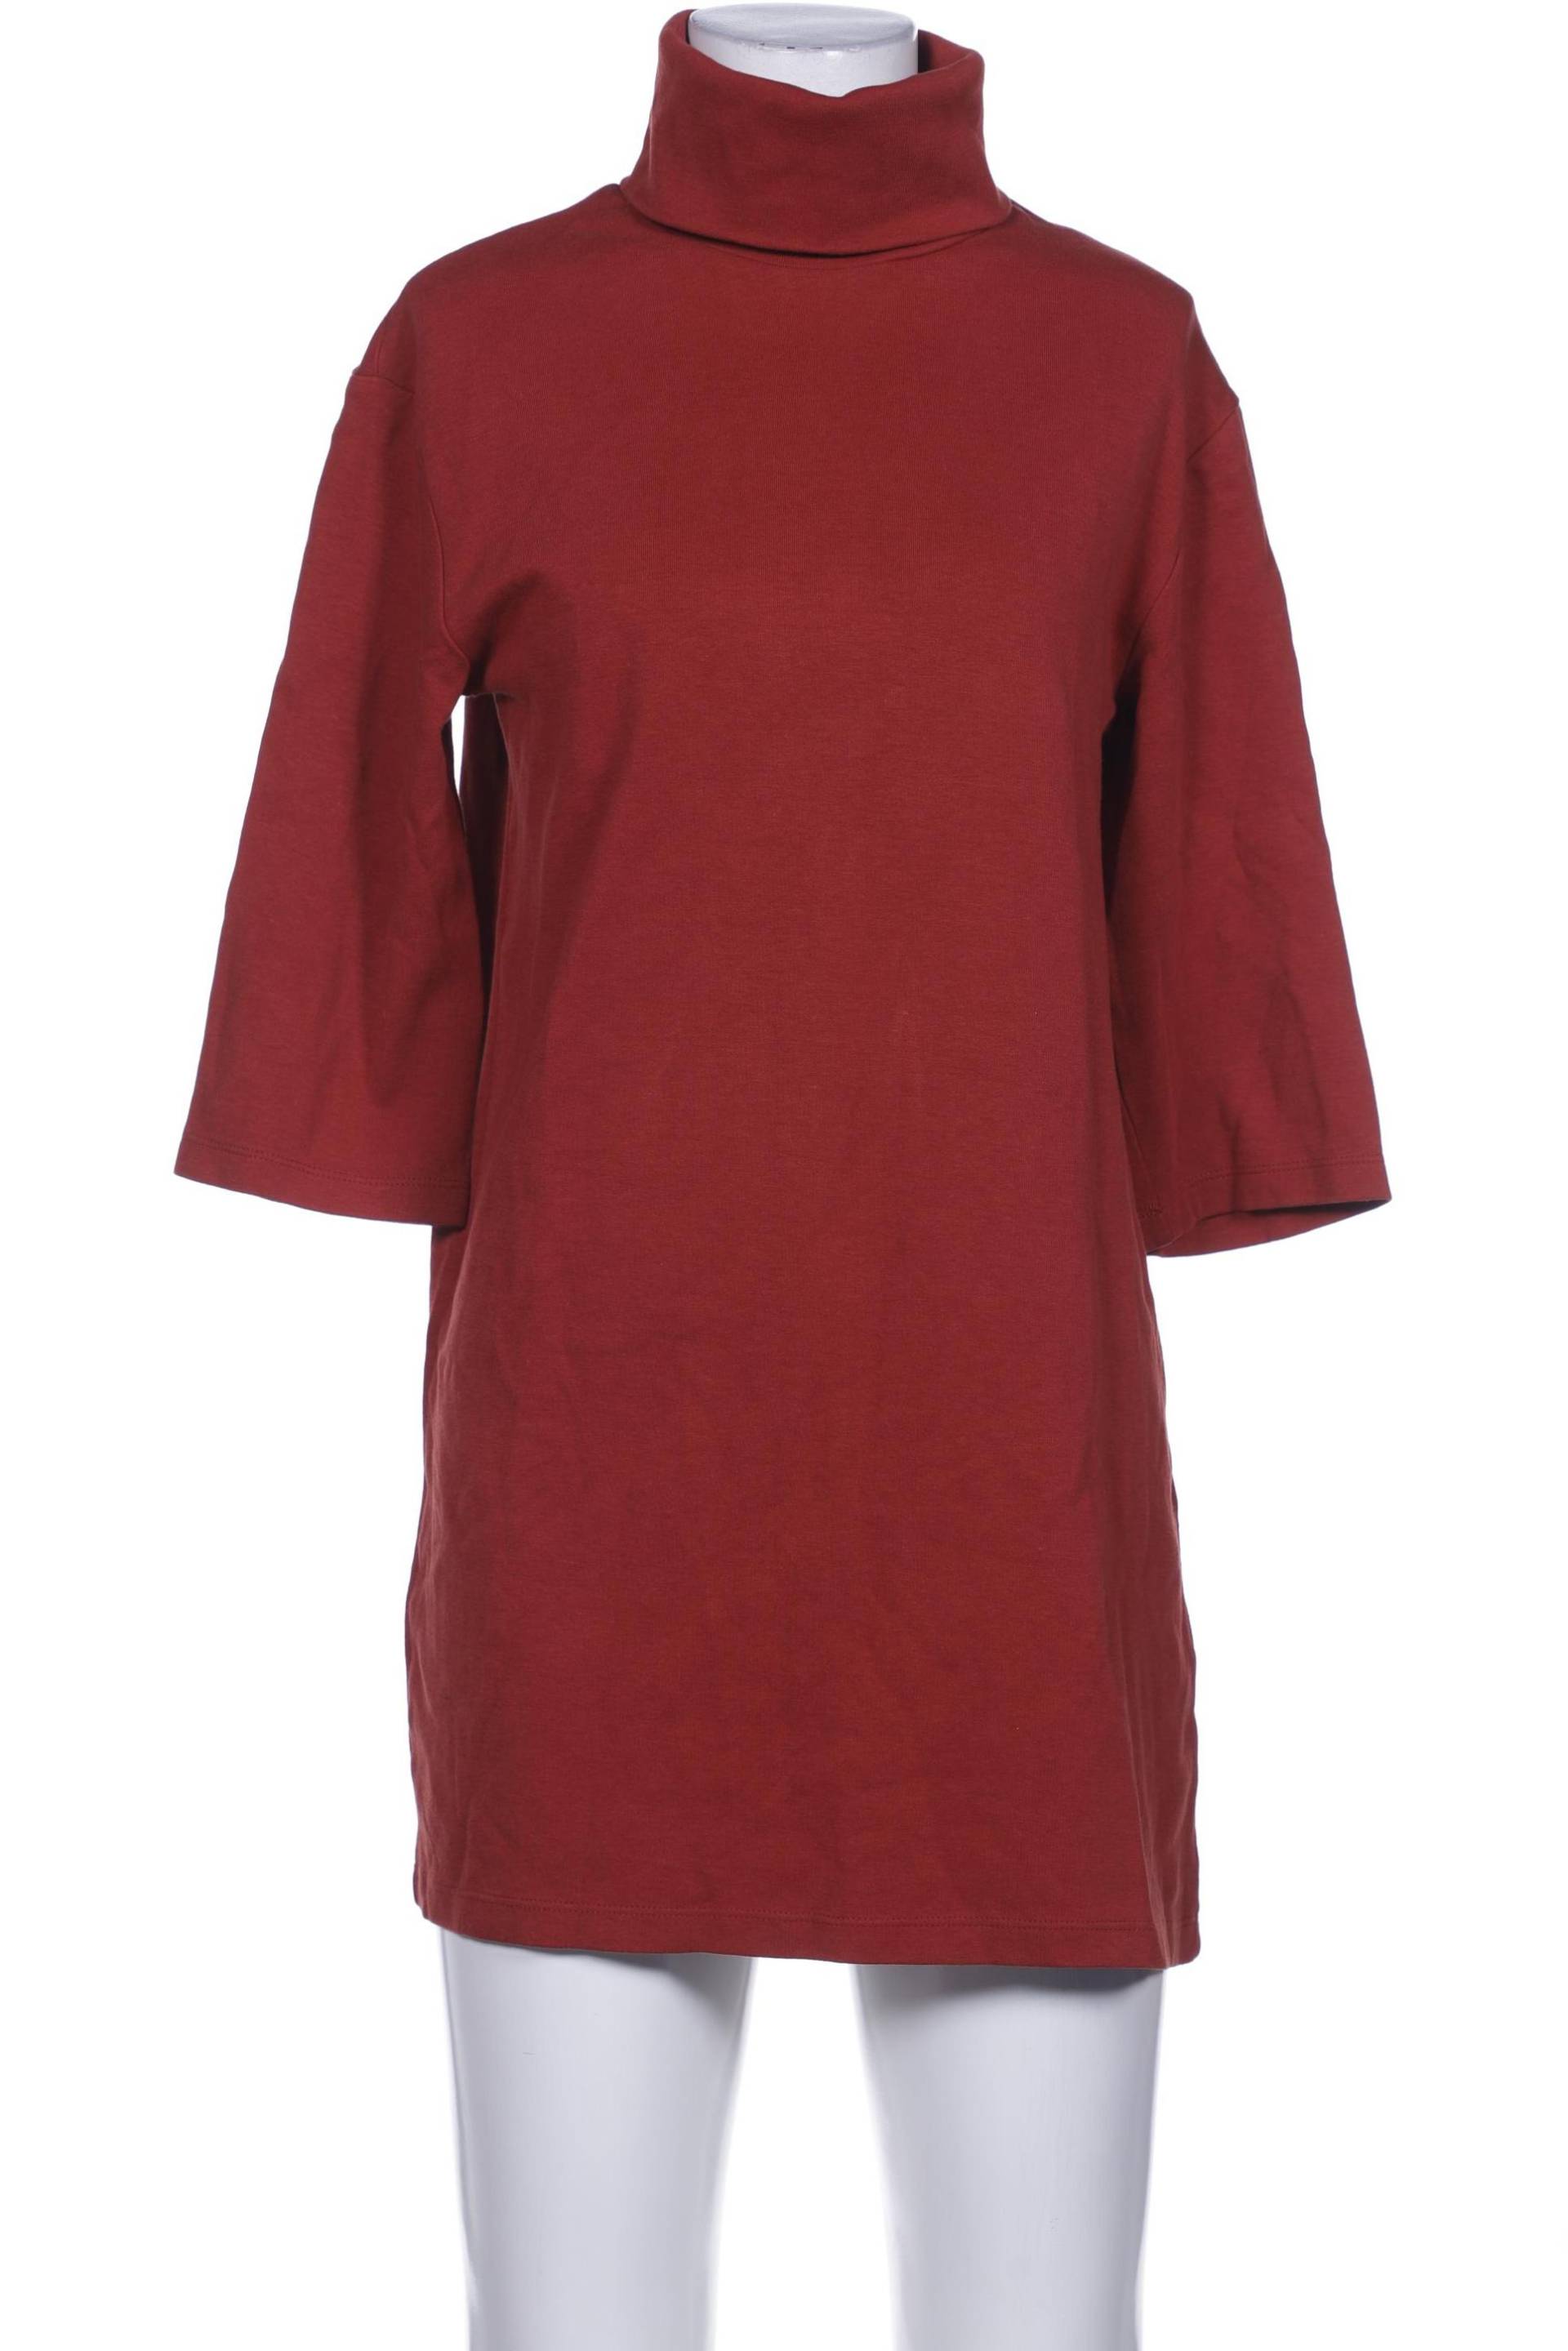 Zara Damen Kleid, braun, Gr. 36 von ZARA